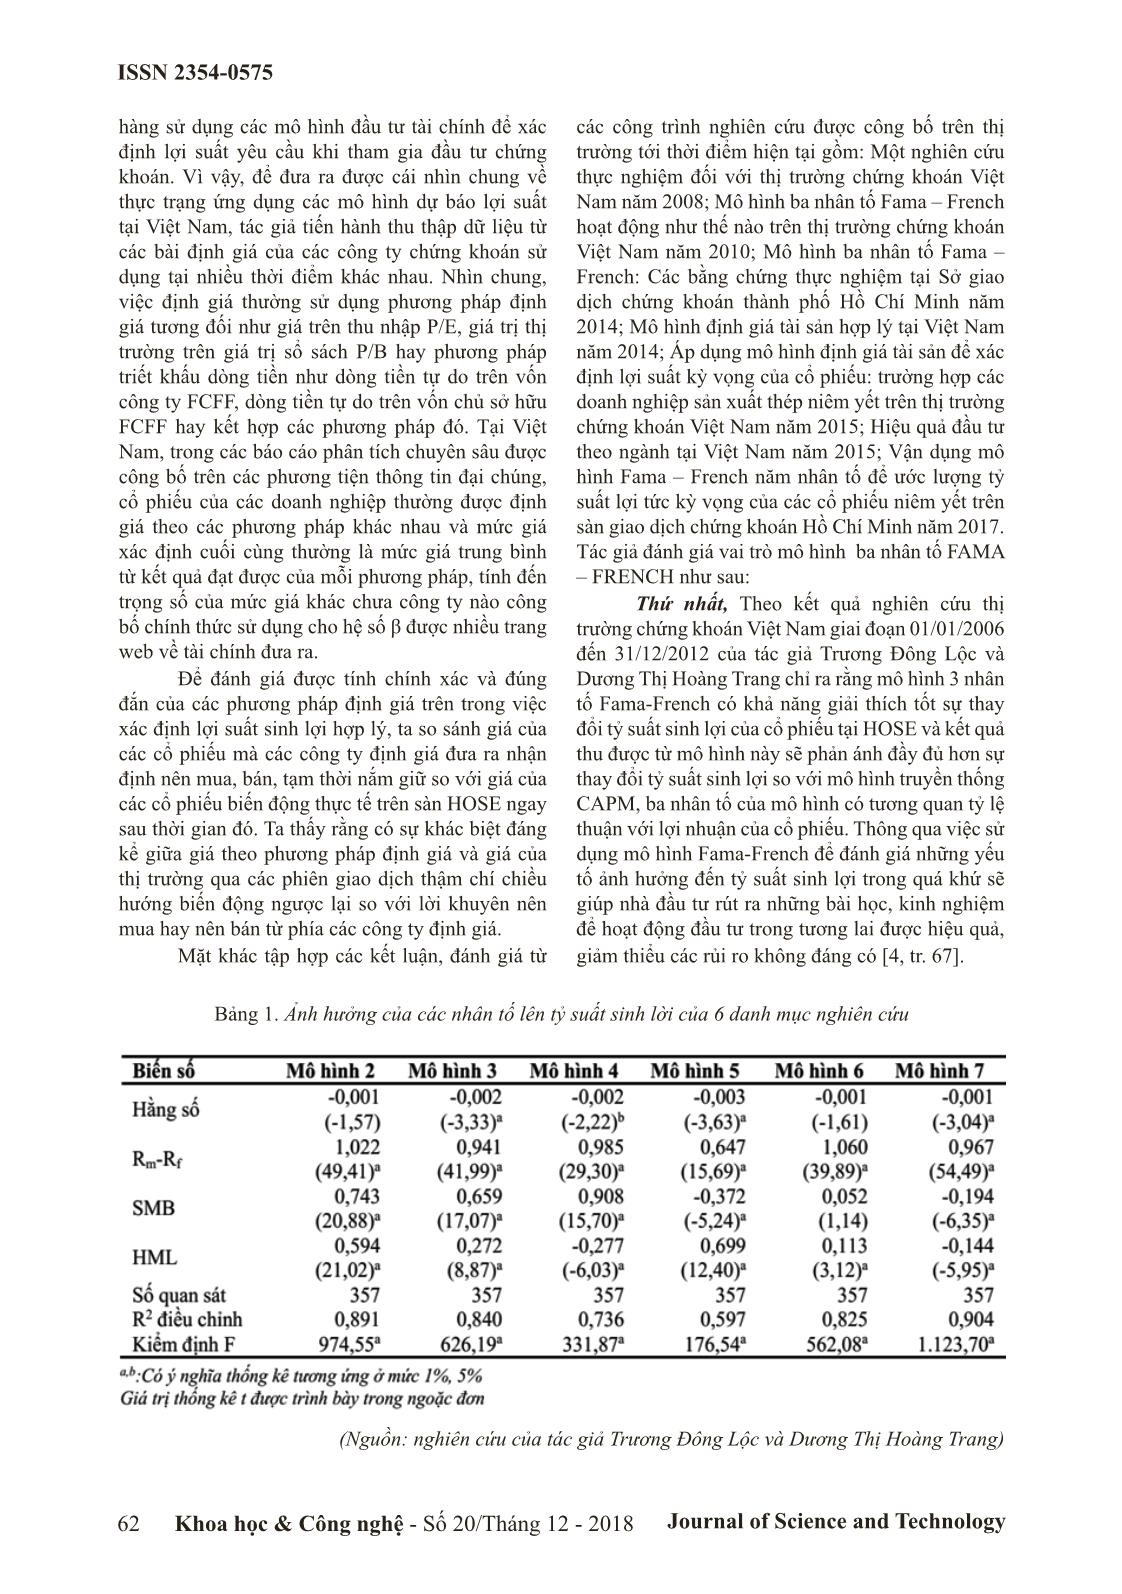 Vai trò của mô hình 3 nhân tố FAMA – FRENCH trong ước lượng tỷ suất sinh lời cổ phiếu trên thị trường chứng khoán Việt Nam trang 3